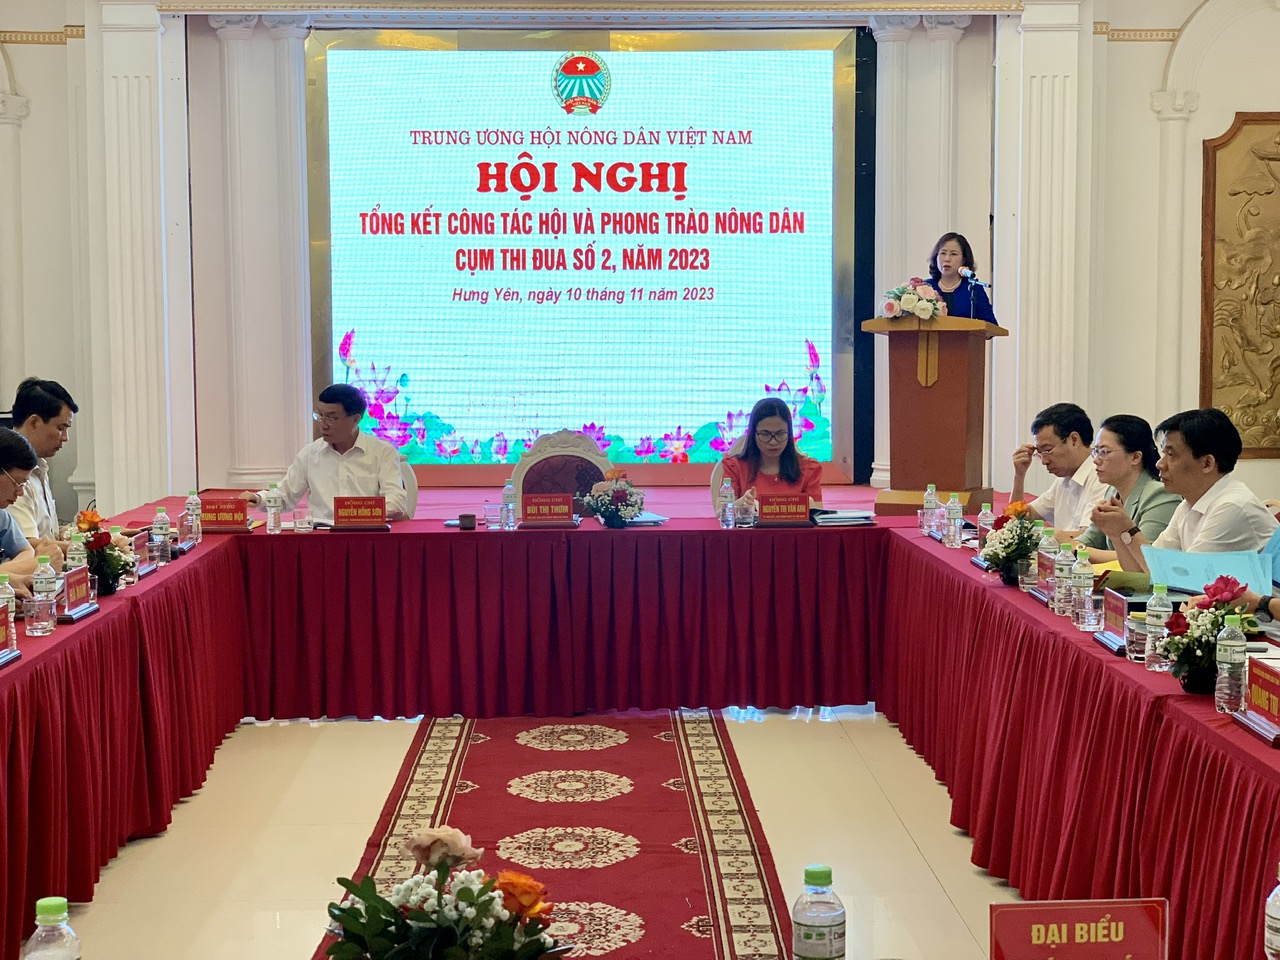 Phó Chủ tịch Hội NDVN Bùi Thị Thơm chủ trì hội nghị tổng kết cụm thi đua số 2 tổ chức tại Hưng Yên - Ảnh 2.